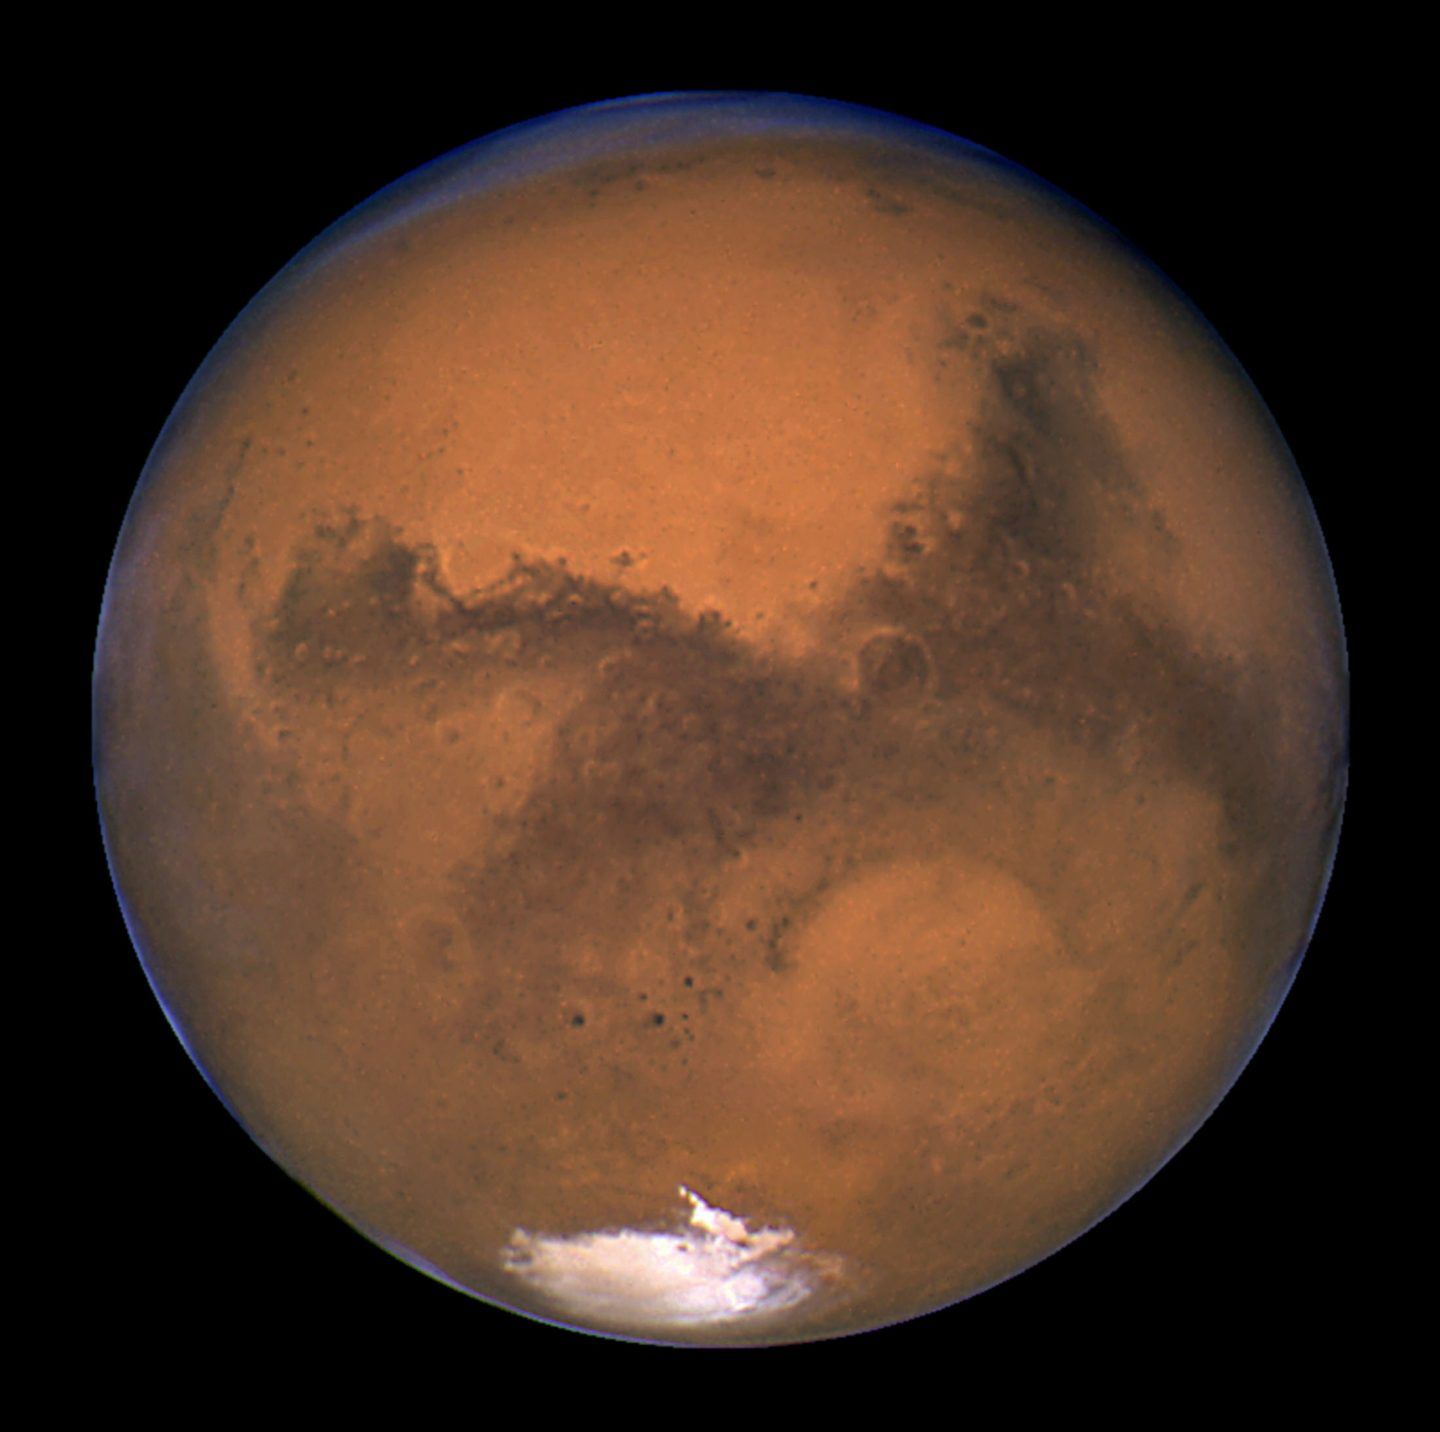 كم من الوقت يُستغرق للوصول إلى المريخ؟